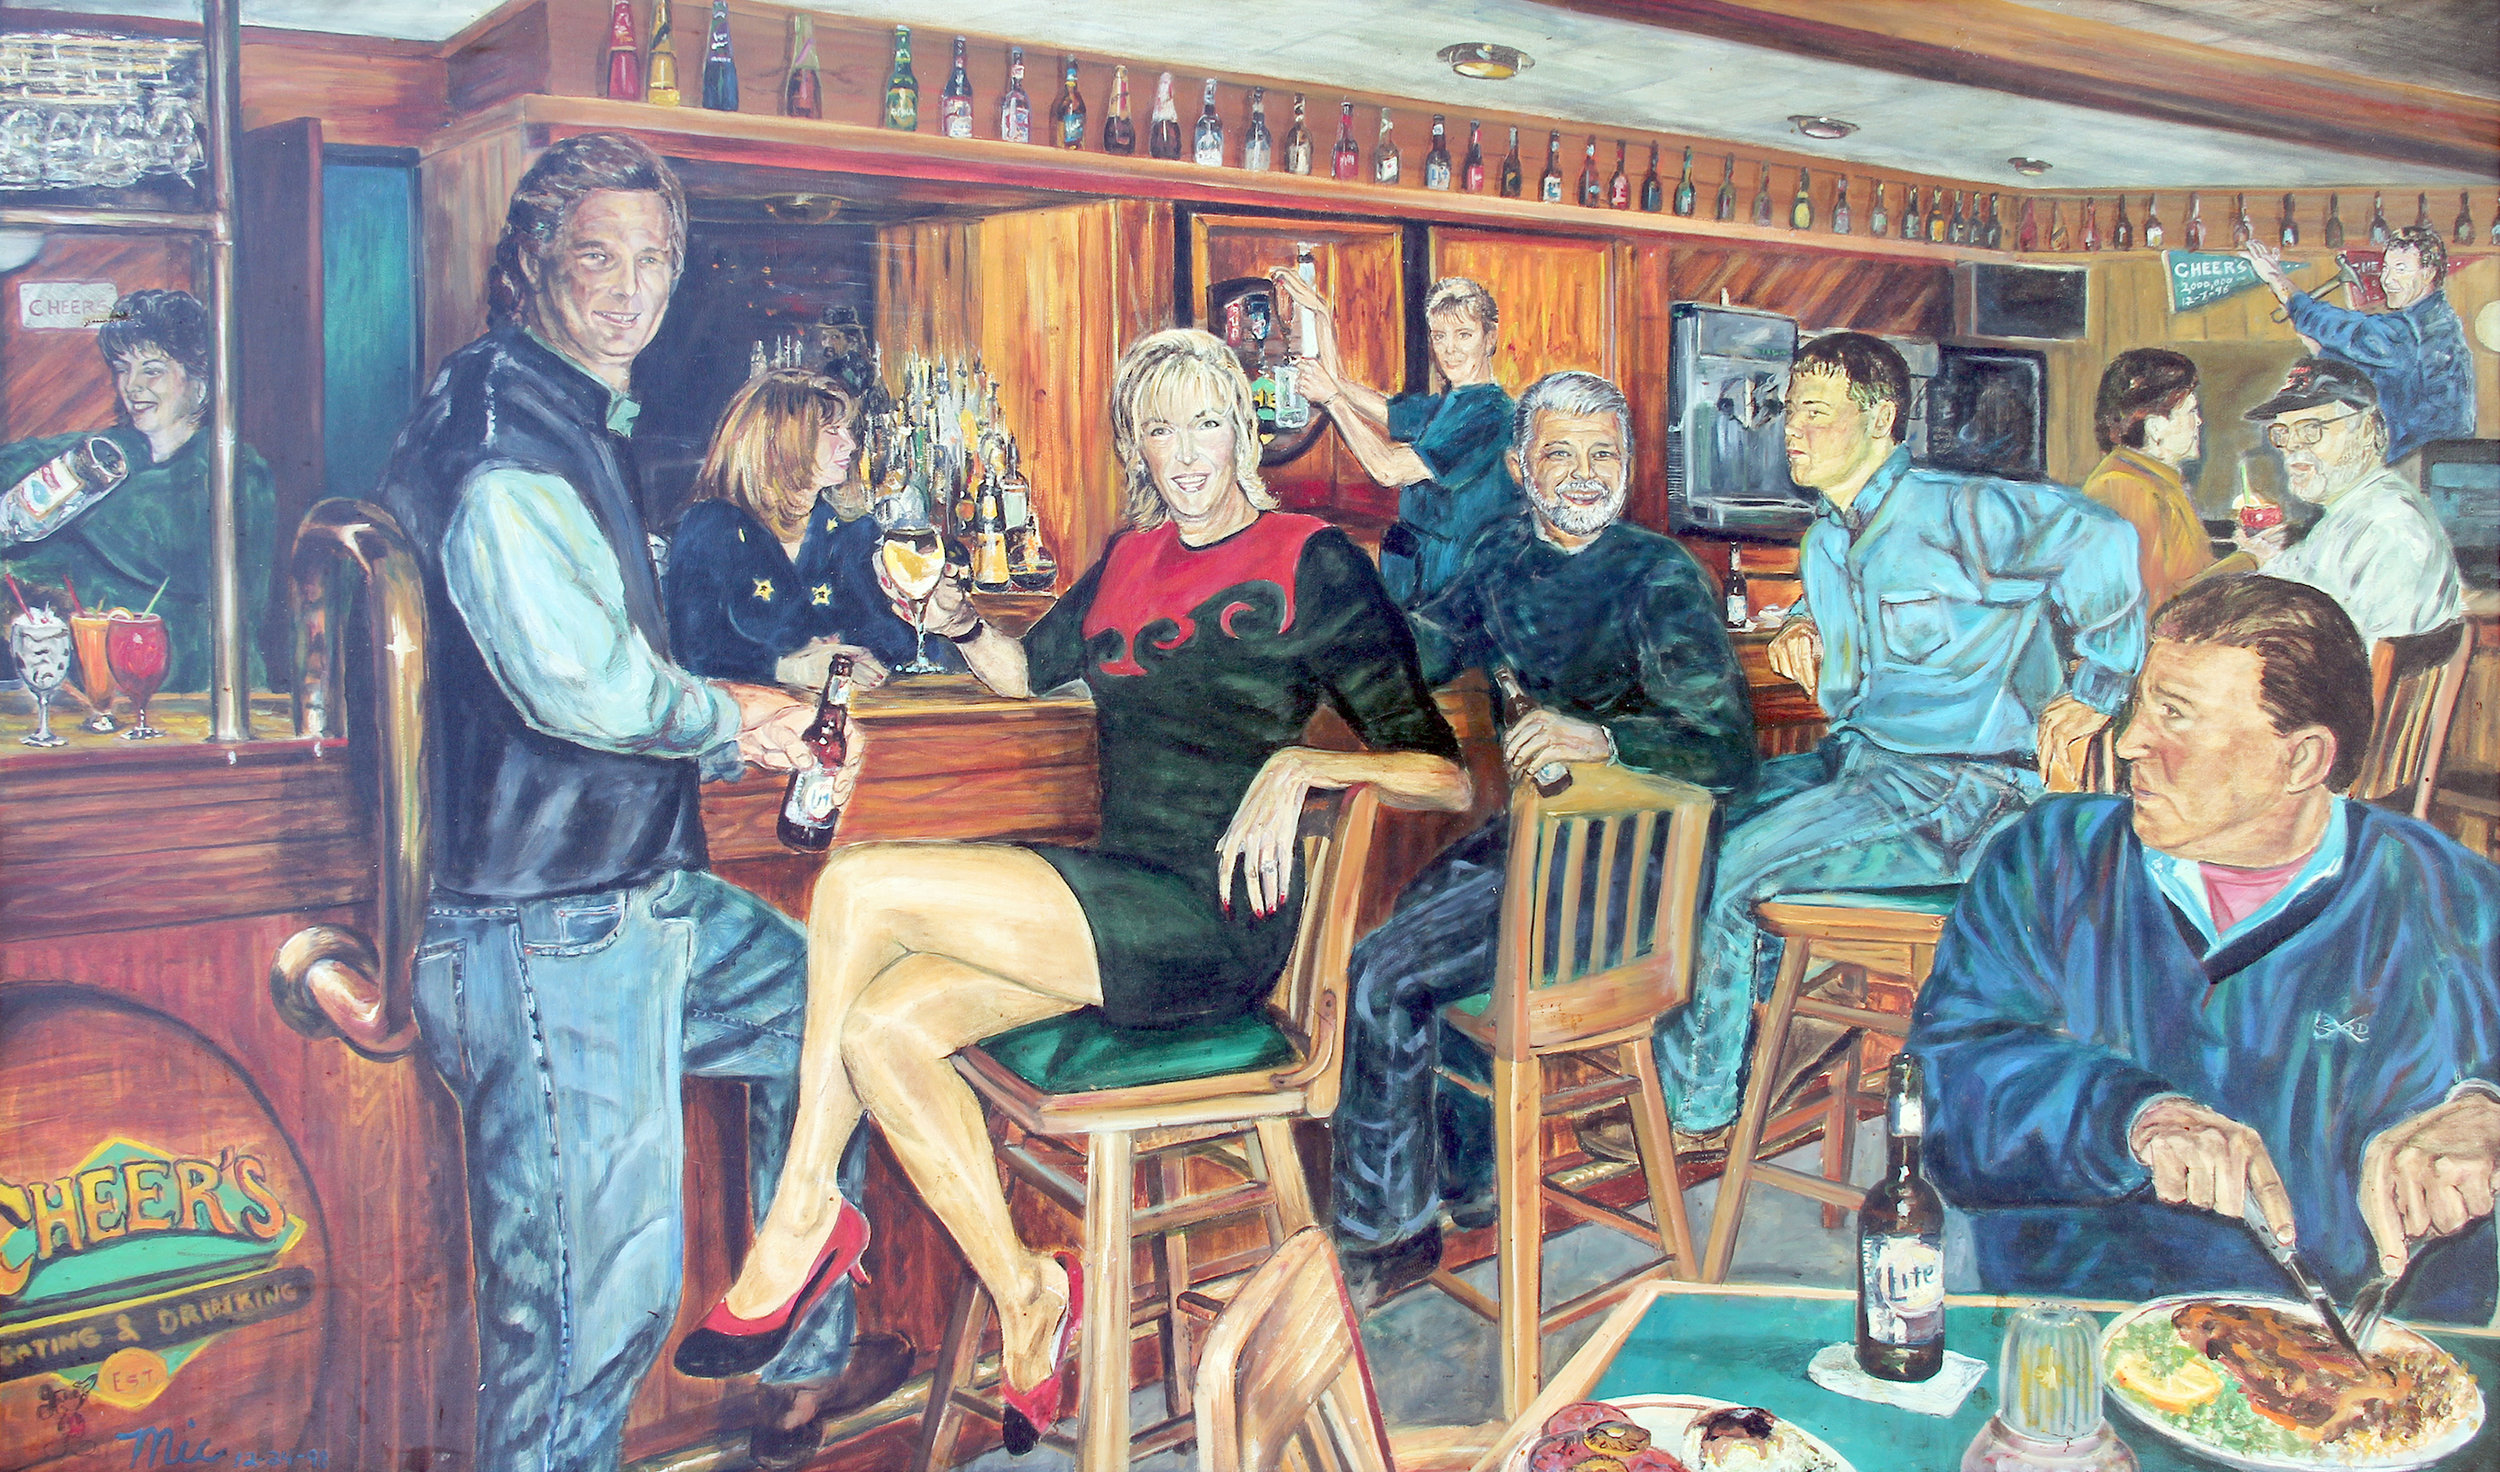 "Bar at Cheers" Grand Rapids, Michigan